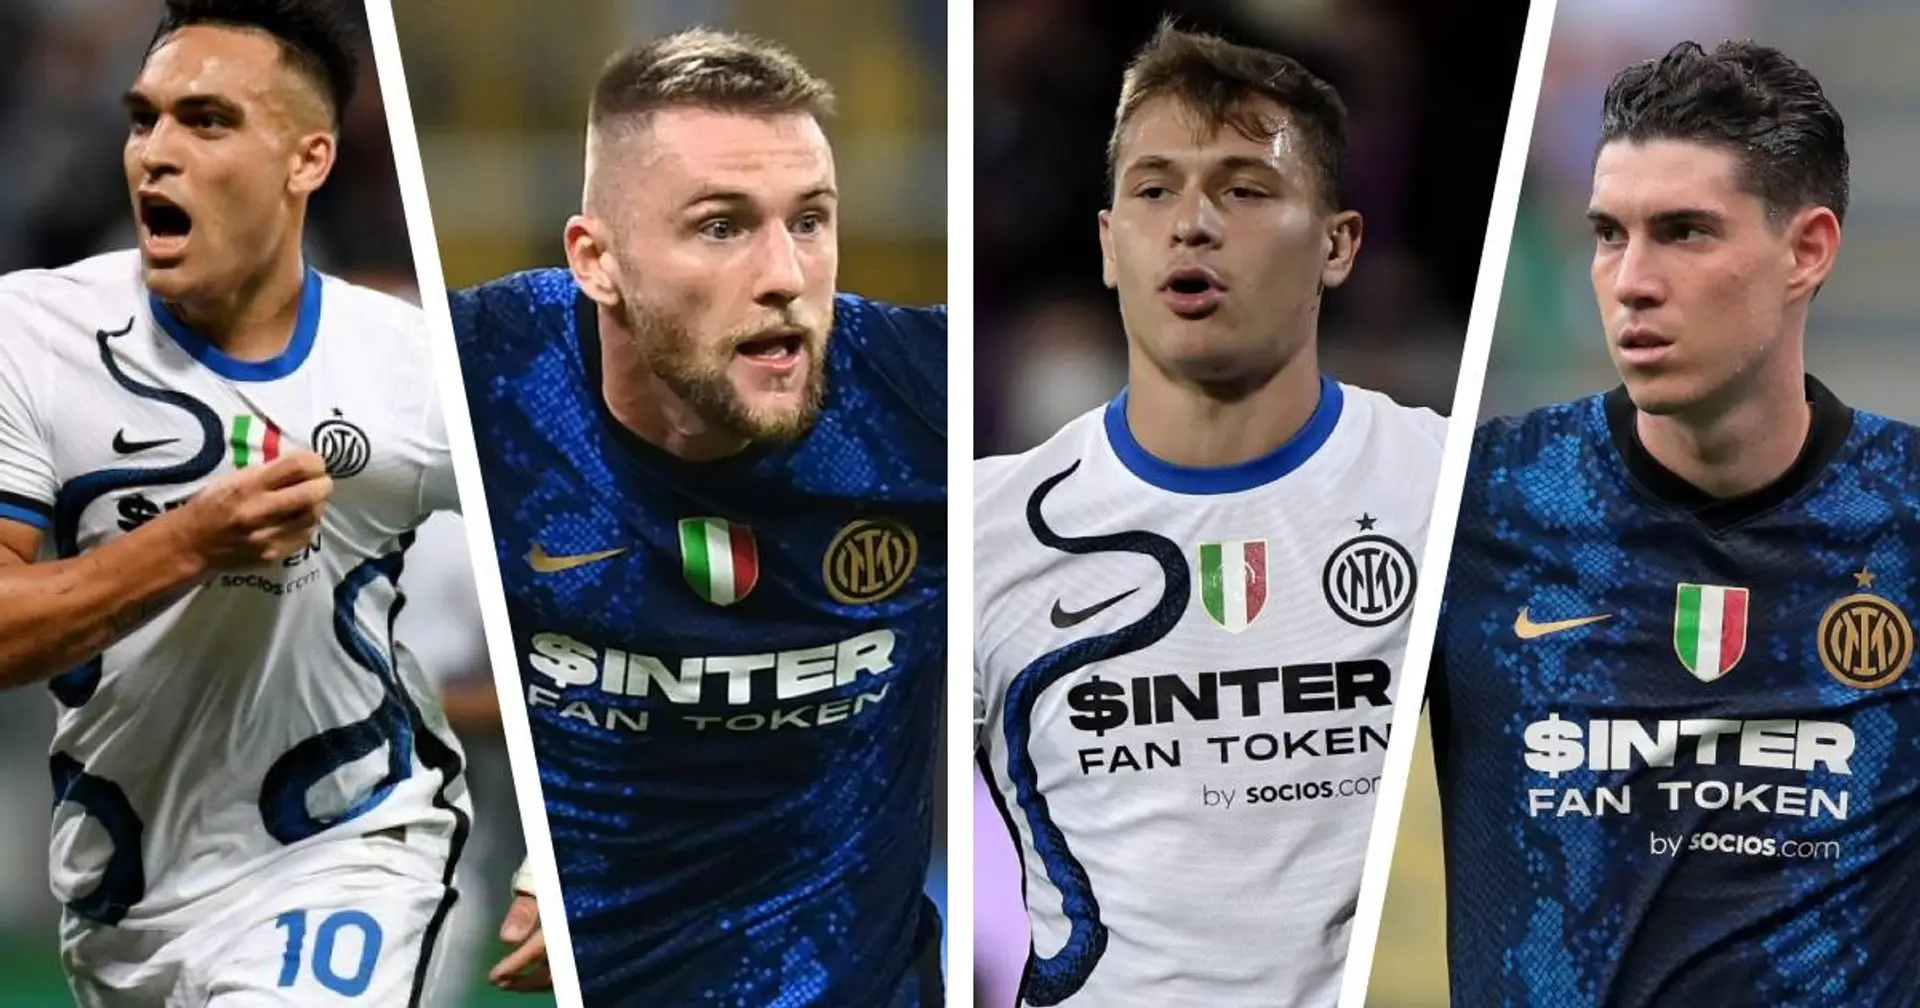 Inter braucht 100 Mio. Euro bis Juni - Lautaro, Skriniar, Barella oder Bastoni könnten verkauft werden 